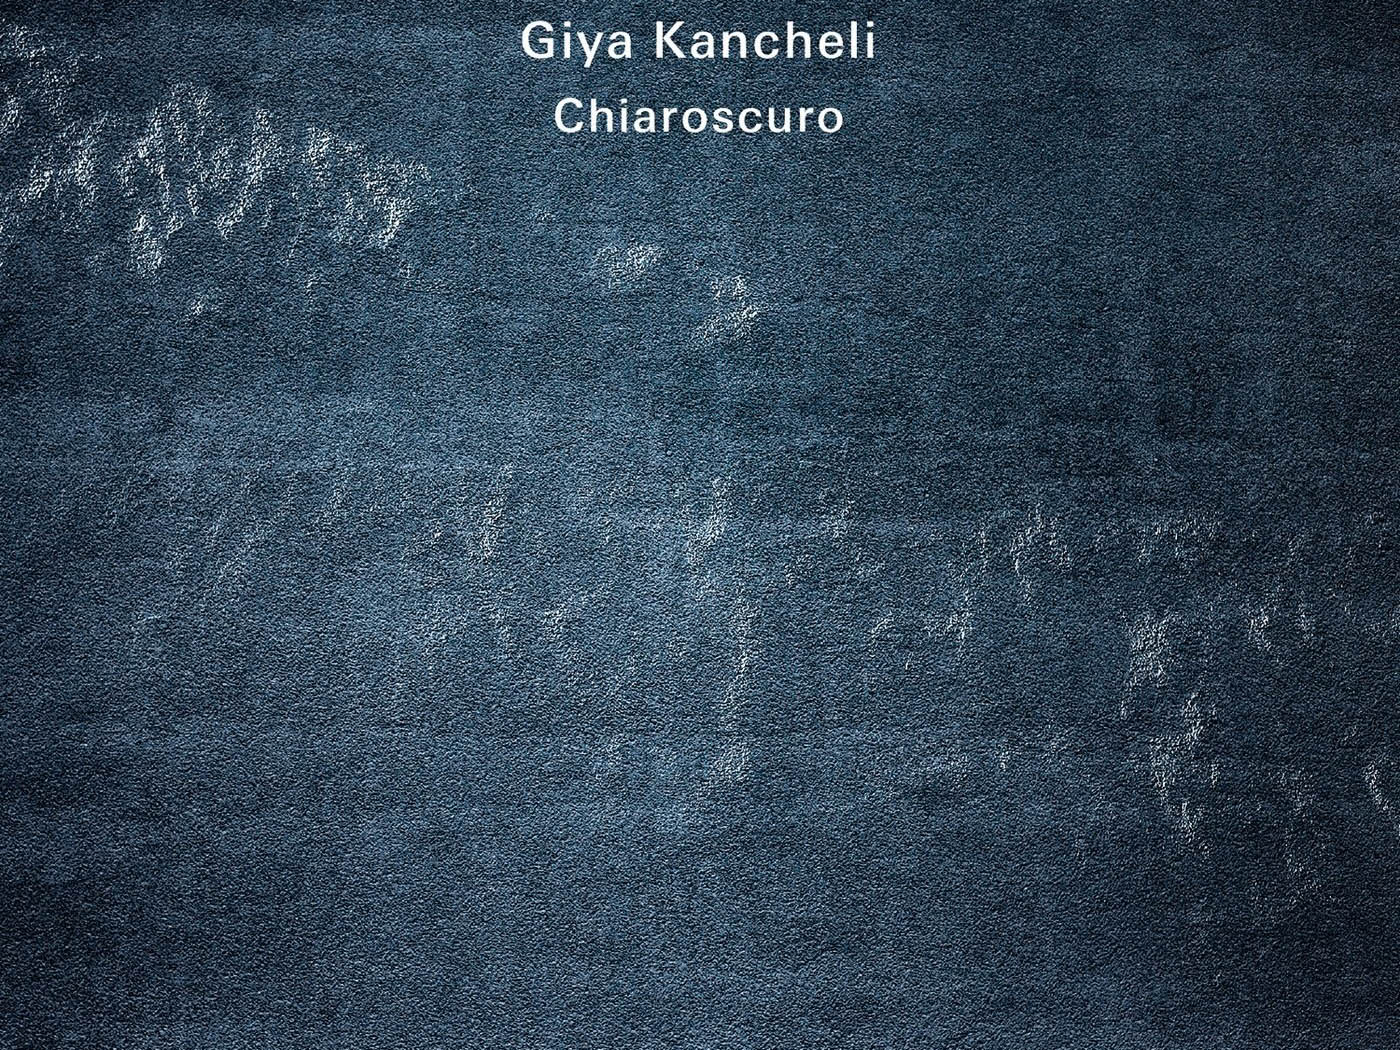 Giya Kancheli